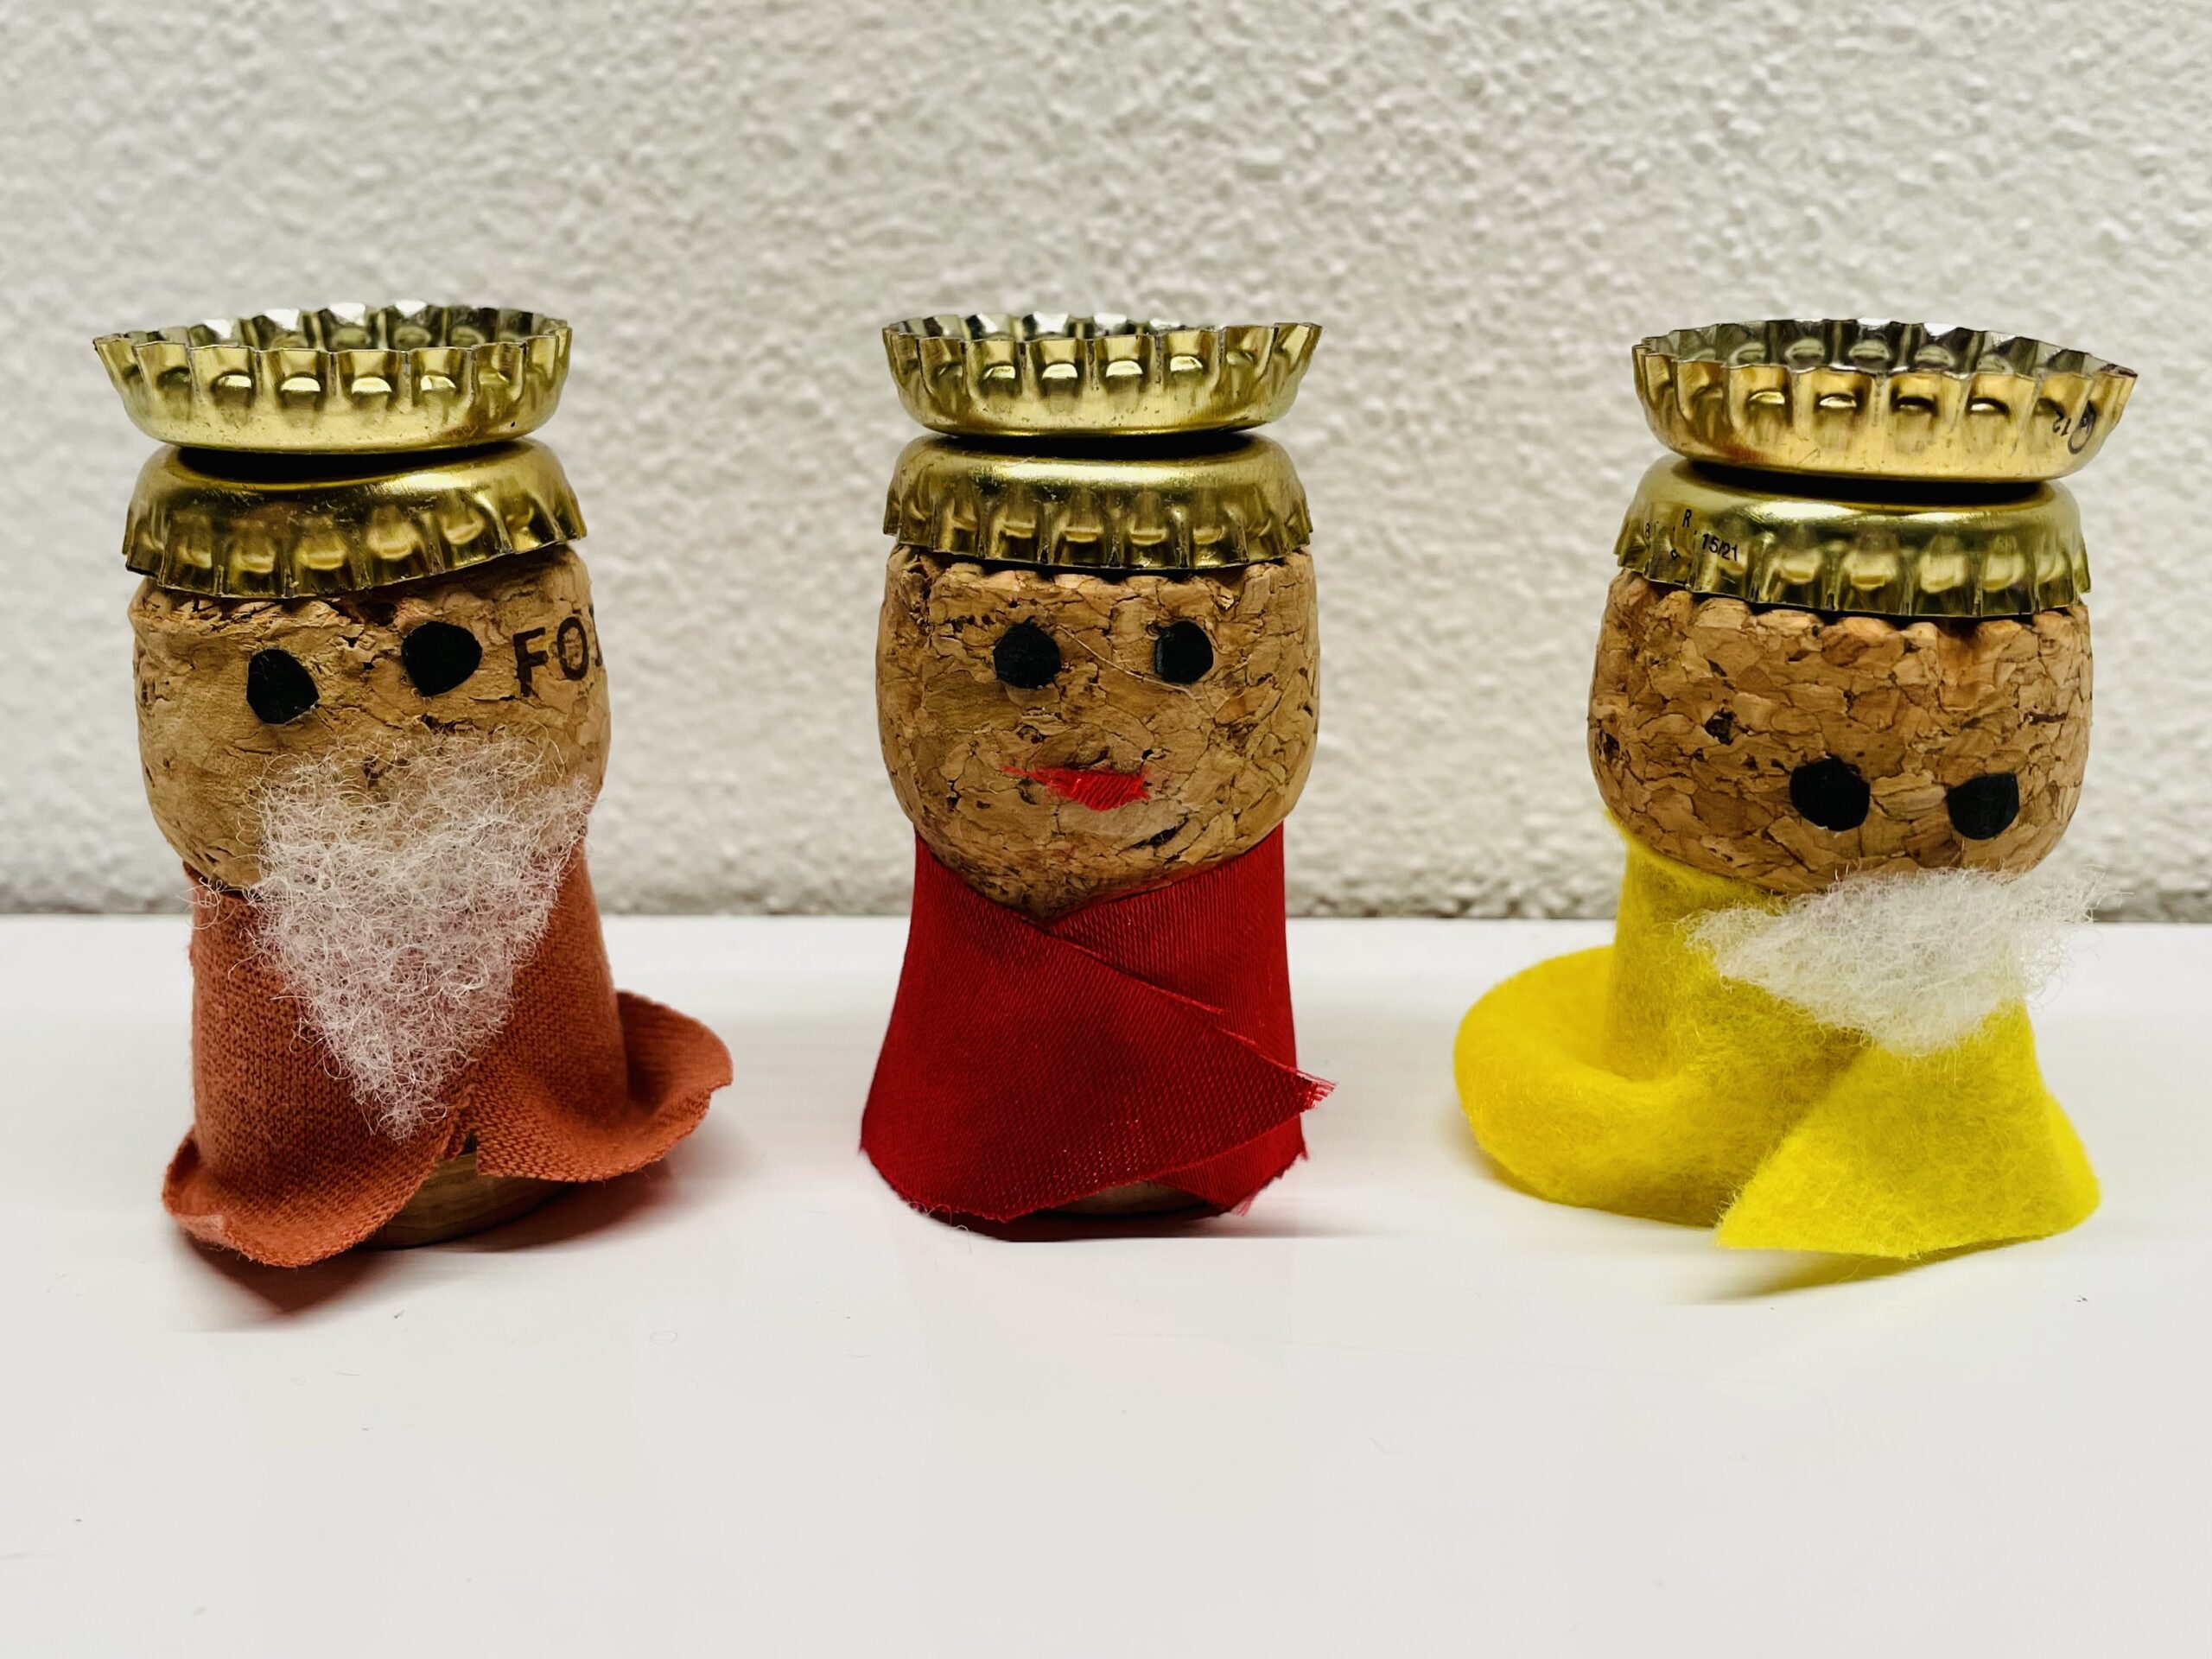 Bild zum Schritt 14 für das Bastel- und DIY-Abenteuer für Kinder: 'Fertig sind die drei Könige.'